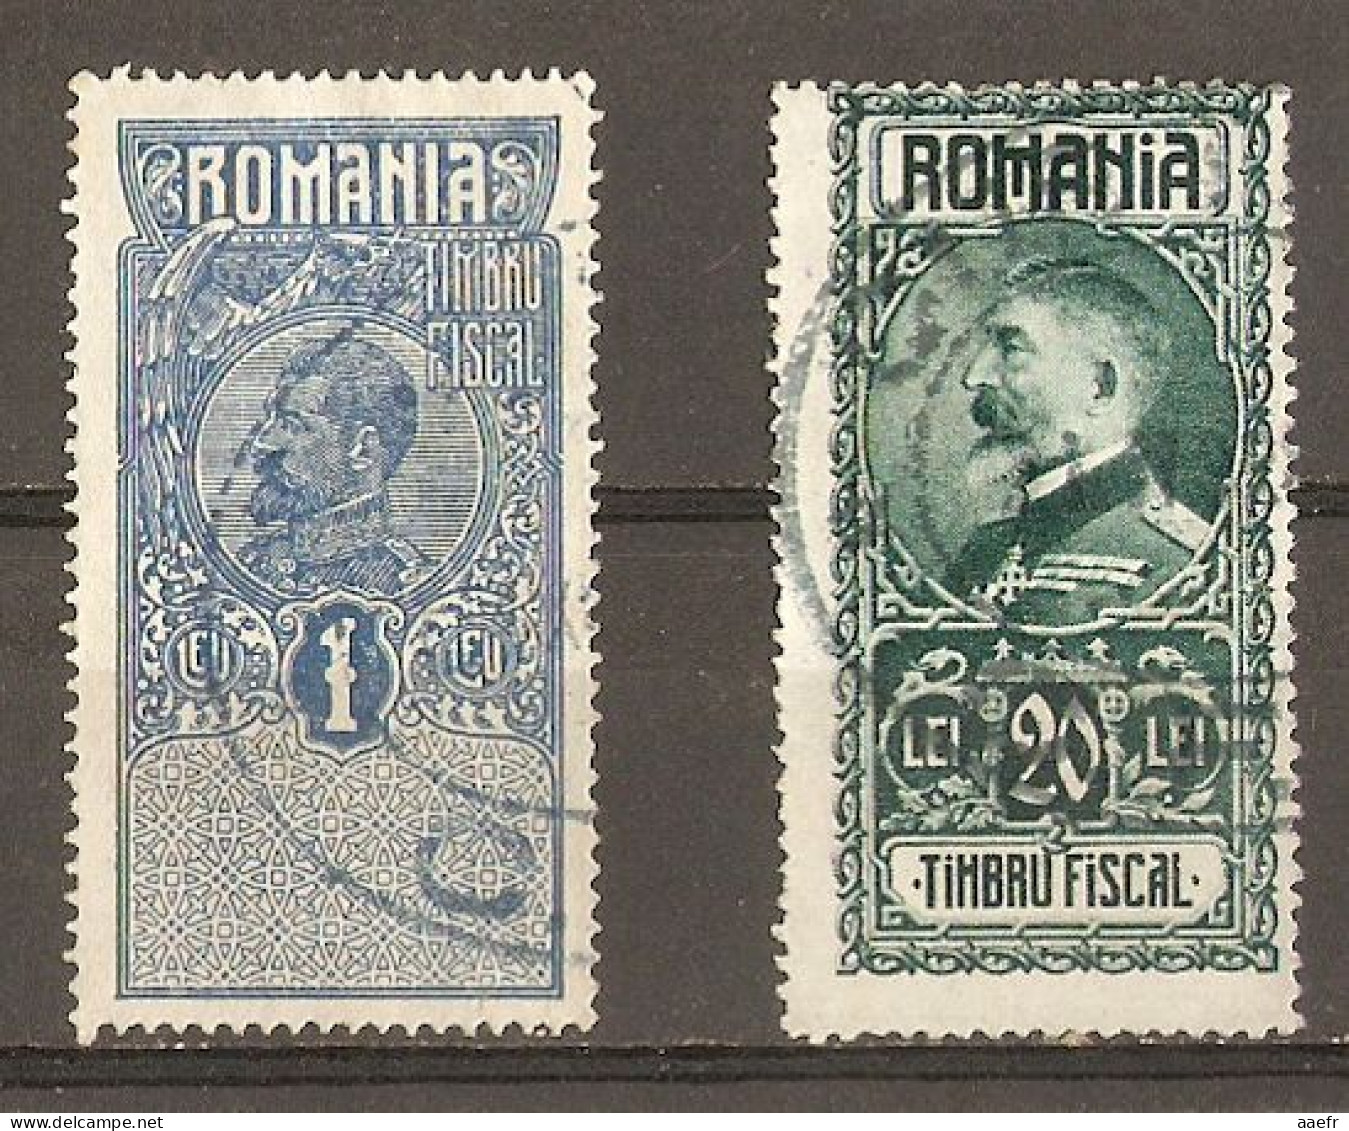 Roumanie - Petit Lot De 2 Timbres Fiscaux - Revenue Stamps - Charles 1er - Ferdinand 1er - Usado